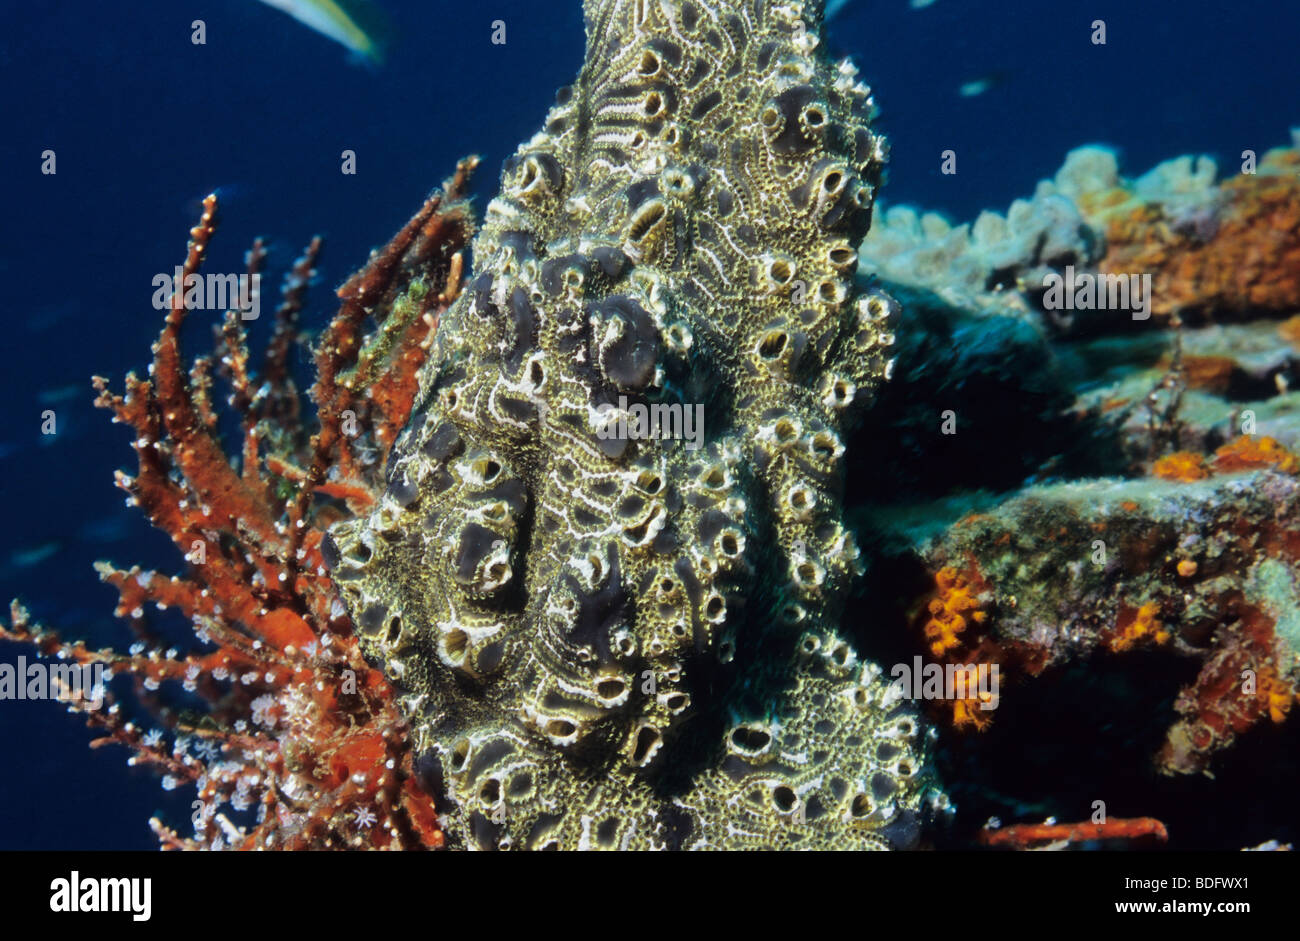 Amazing underwater organismi marini, girato mentre scuba diving al largo dell'isola di Grenada, West Indies Foto Stock